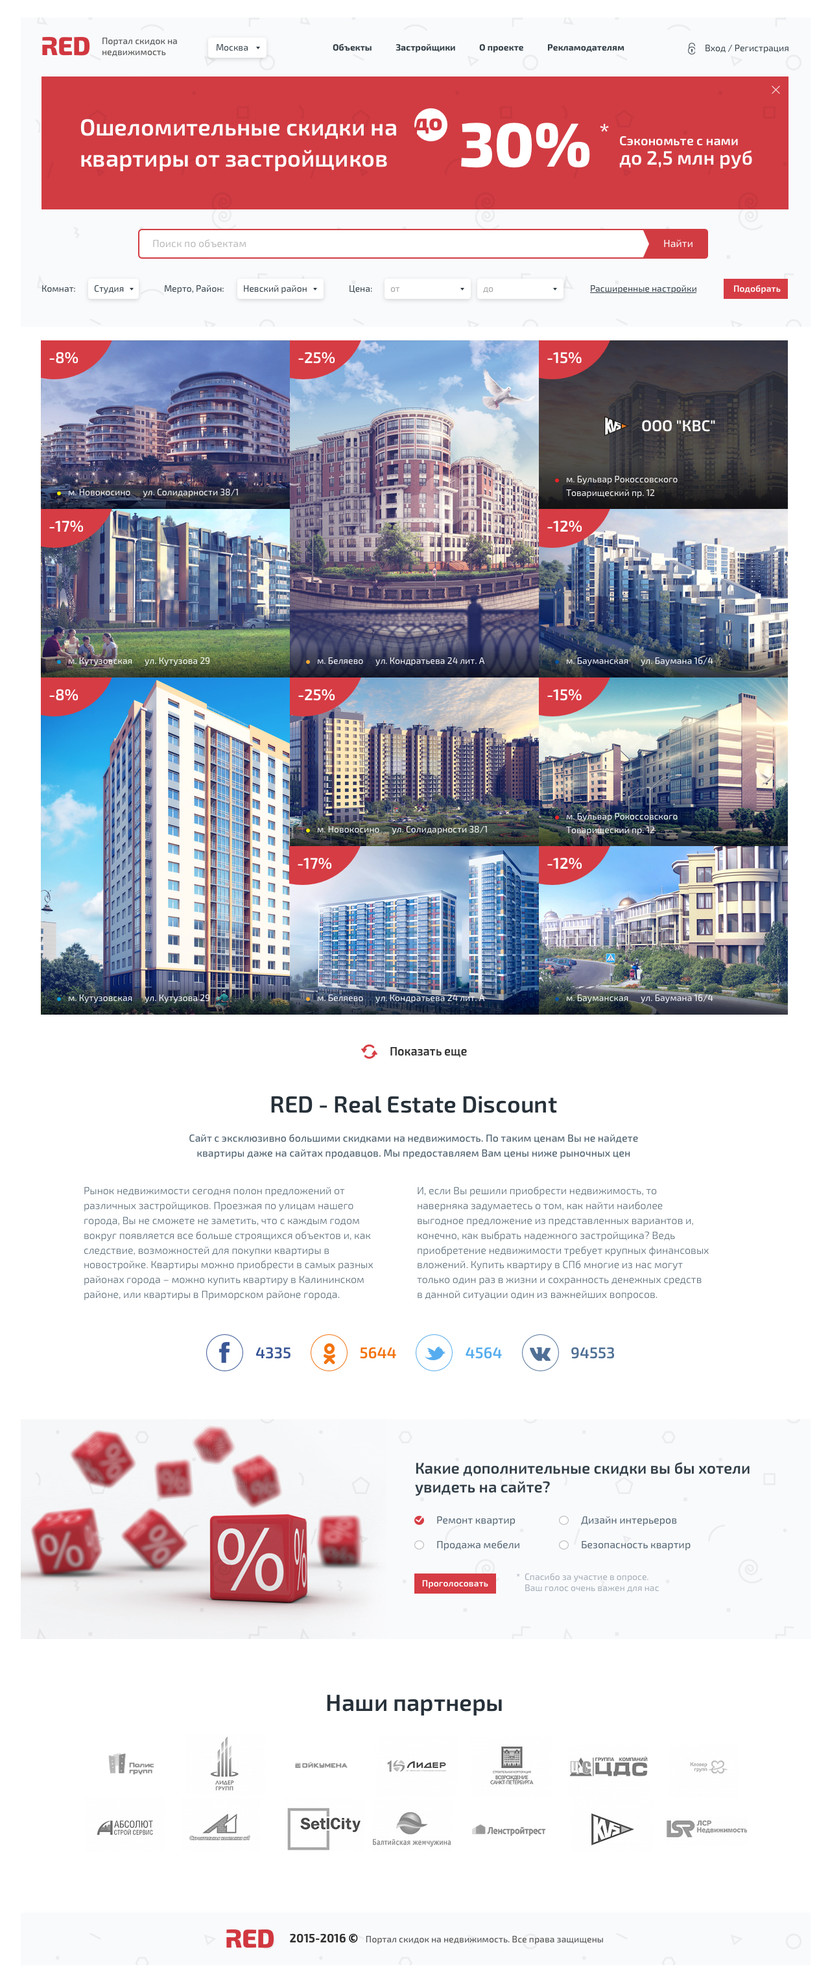 RED - Расшифровка "Real Estate Discount" - что в переводе  с англ "скидка на недвижимость". Также Red переводится с англ как красный, что также символично со скидками и акциями. Поэтому как акцентирующий цвет сайта был выбран красным. По желанию логотип и цвета можно поменять. - Сайт скидок на недвижимость